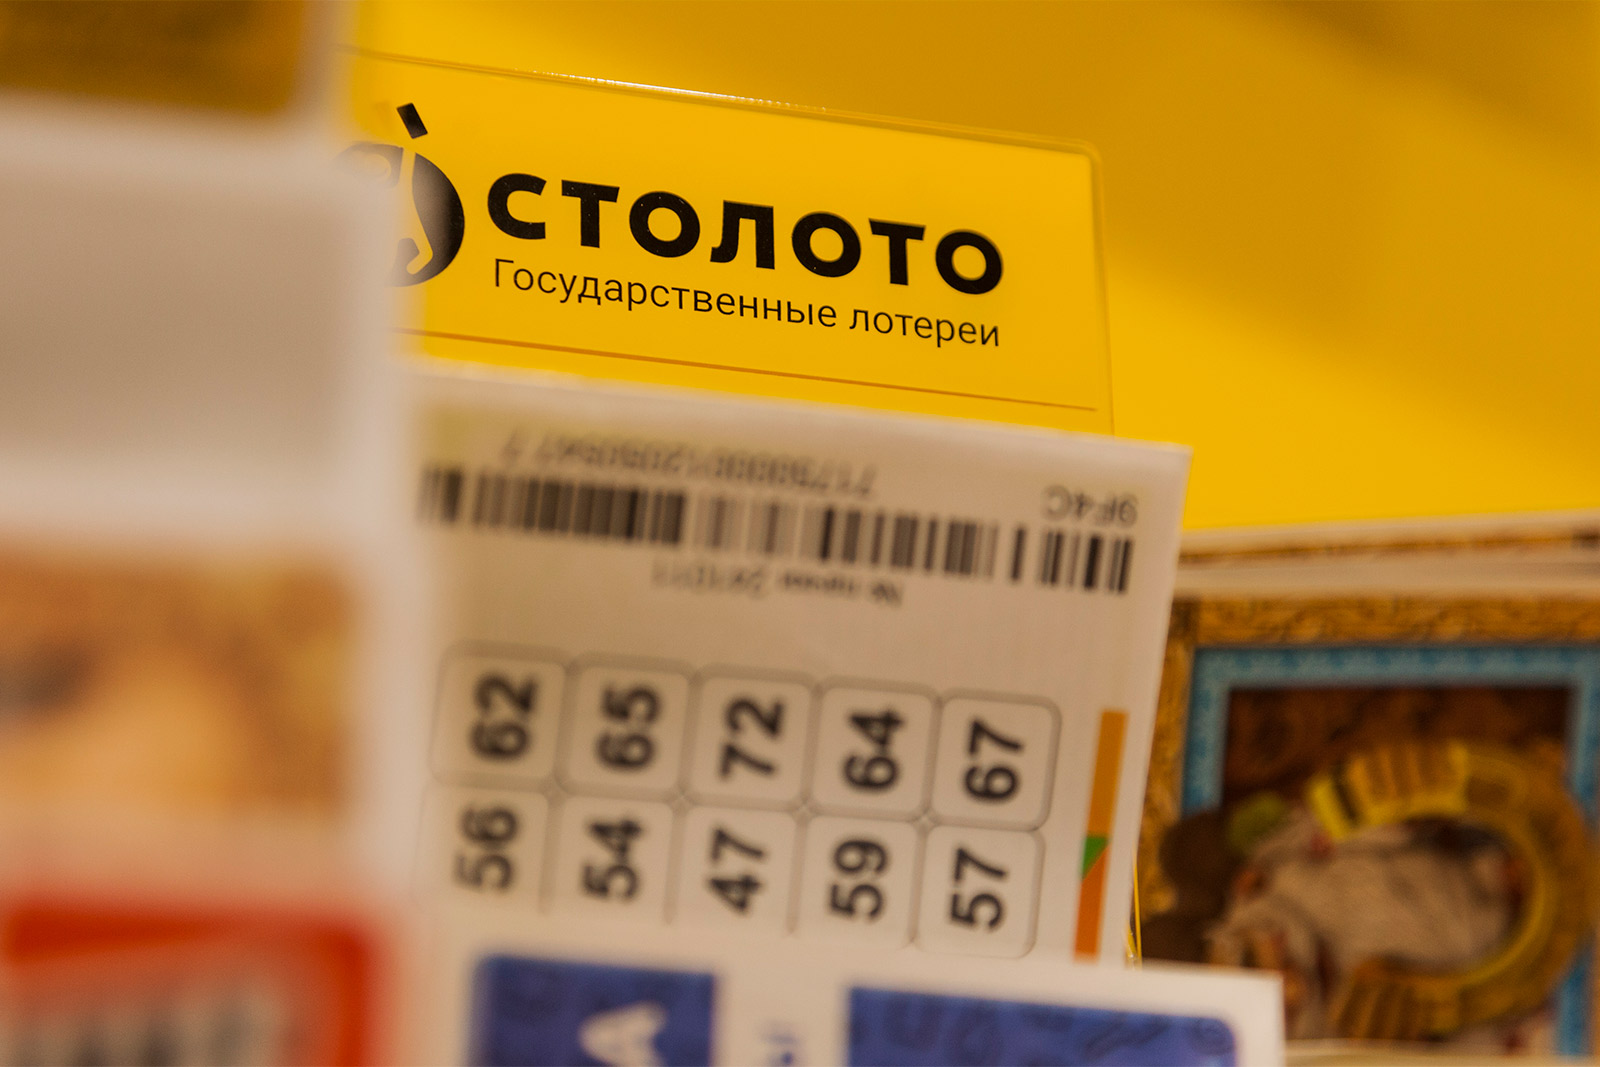 Флагманская розничная сеть «Столото» представит бесплатную франшизу для МСП по распространению лотерейных билетов на «Неделе Российского Ритейла»